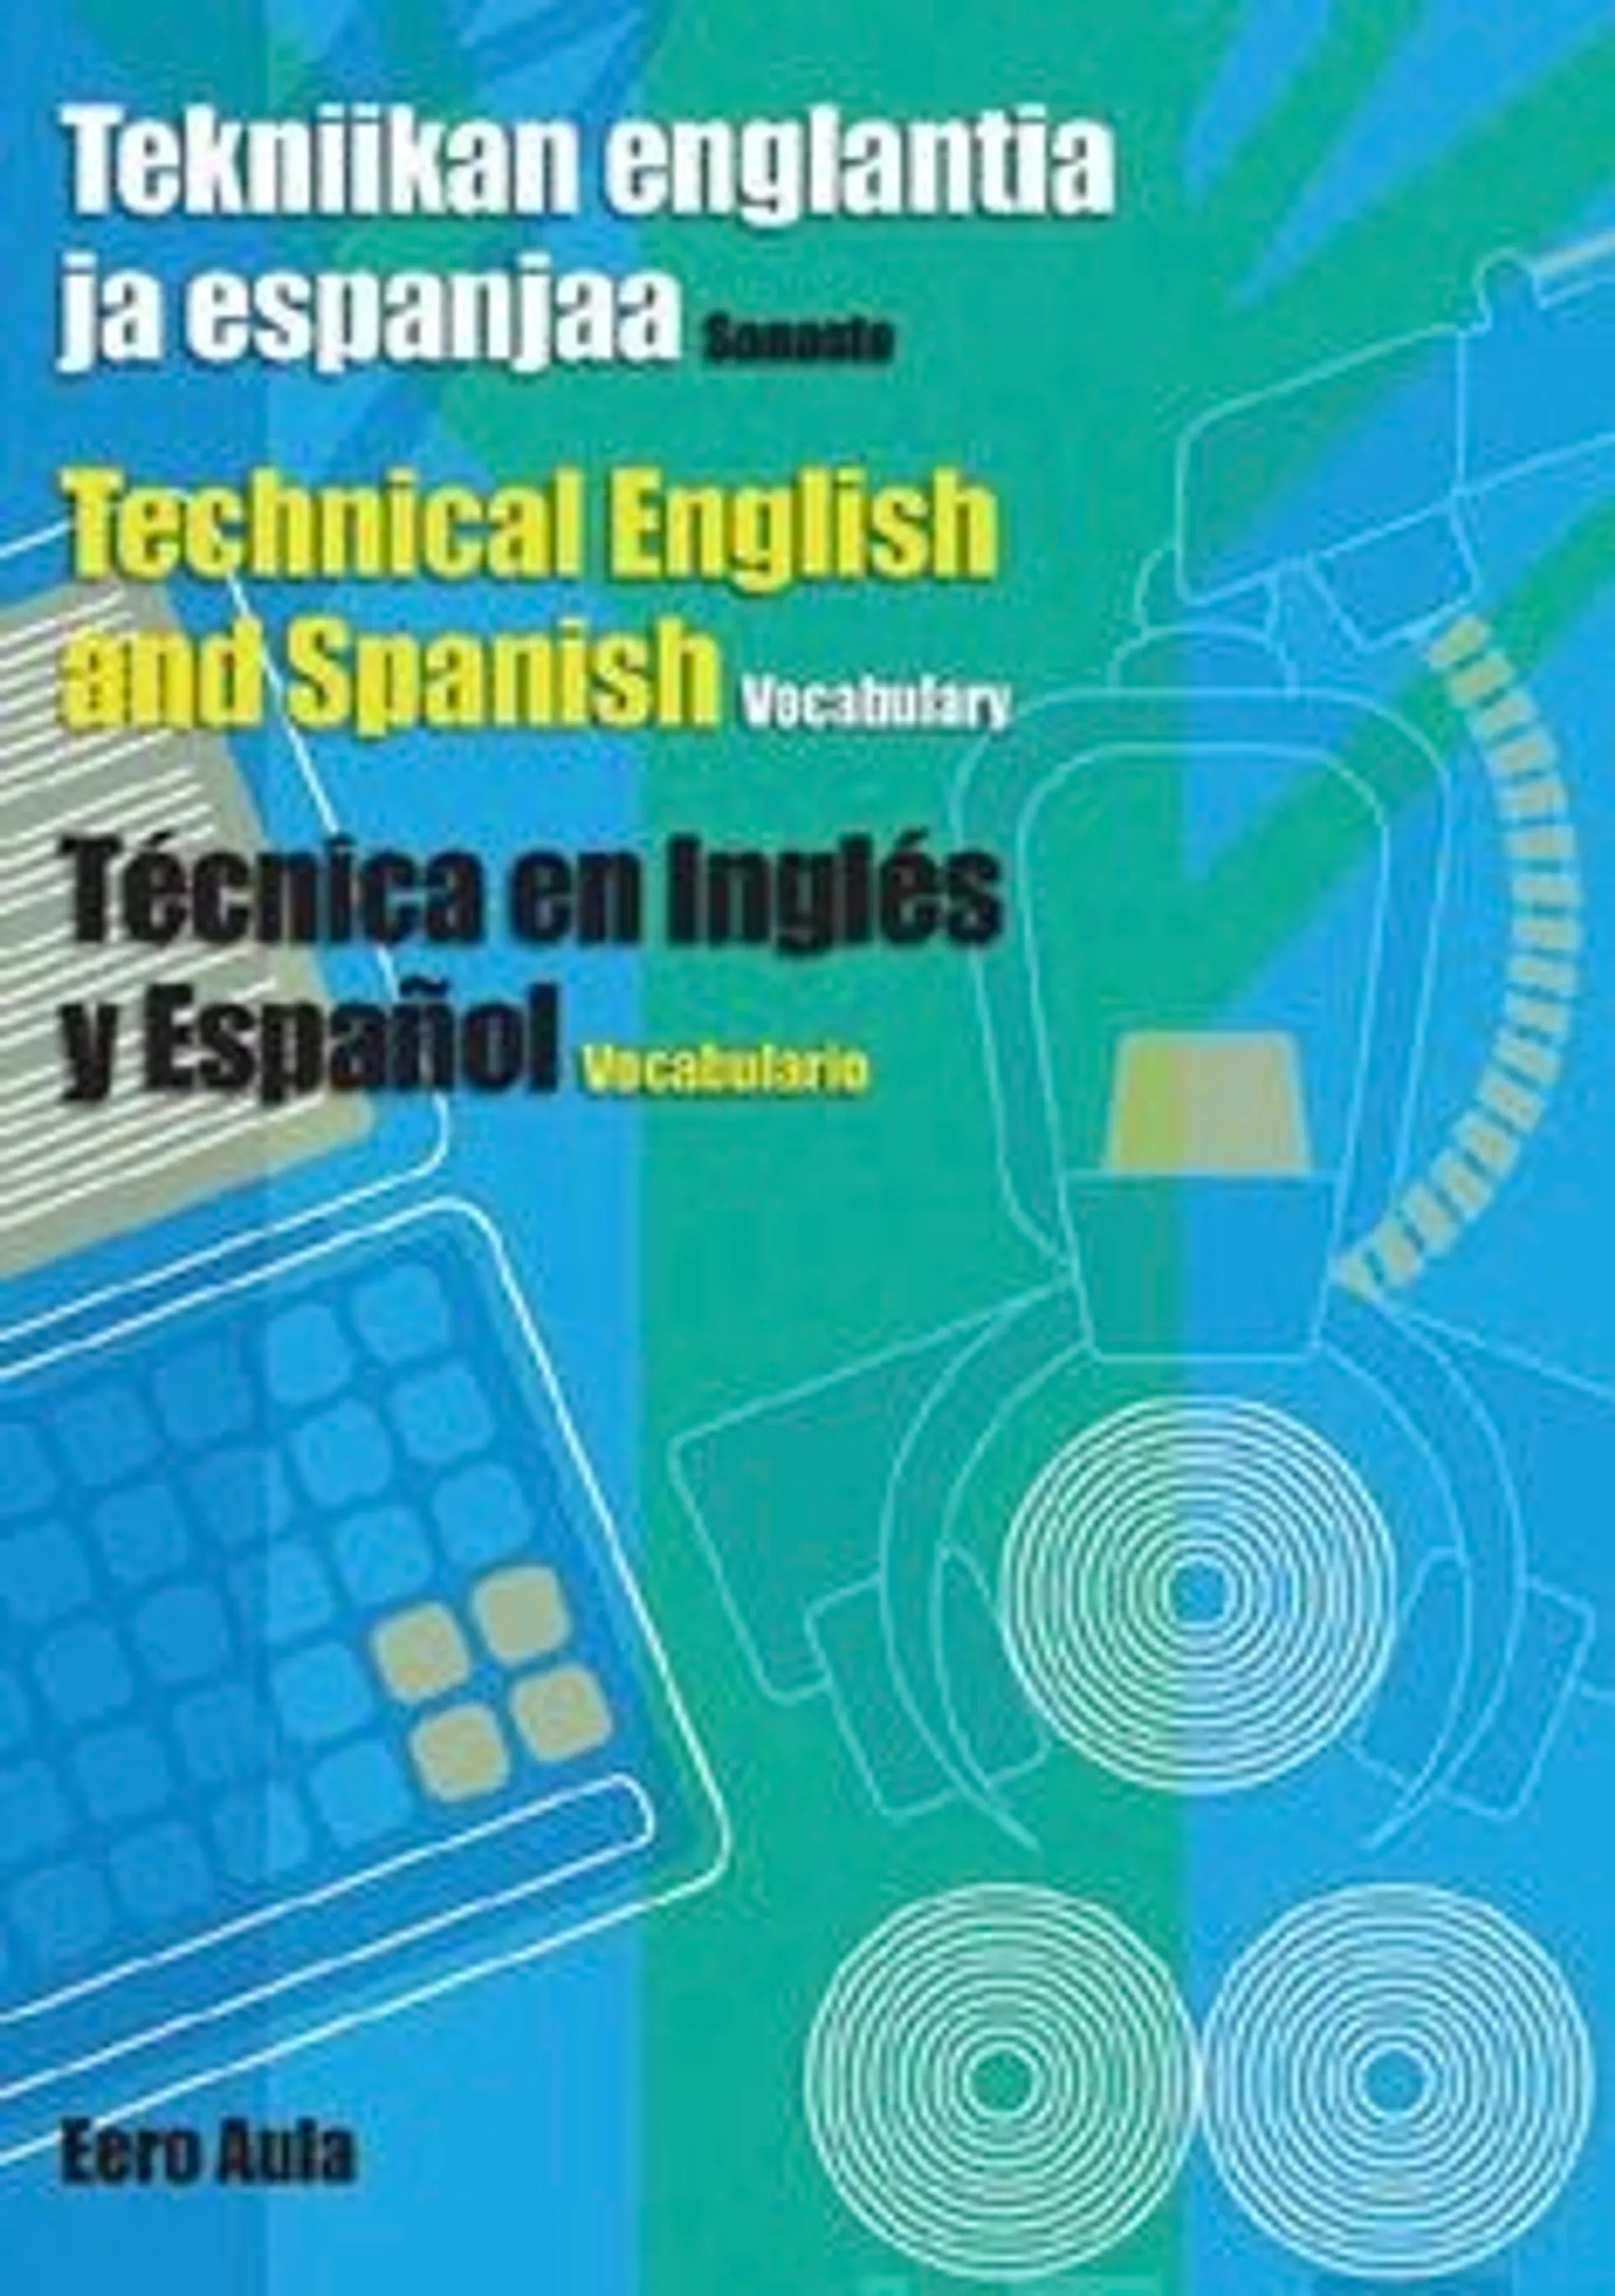 Aula, Tekniikan englantia ja espanjaa